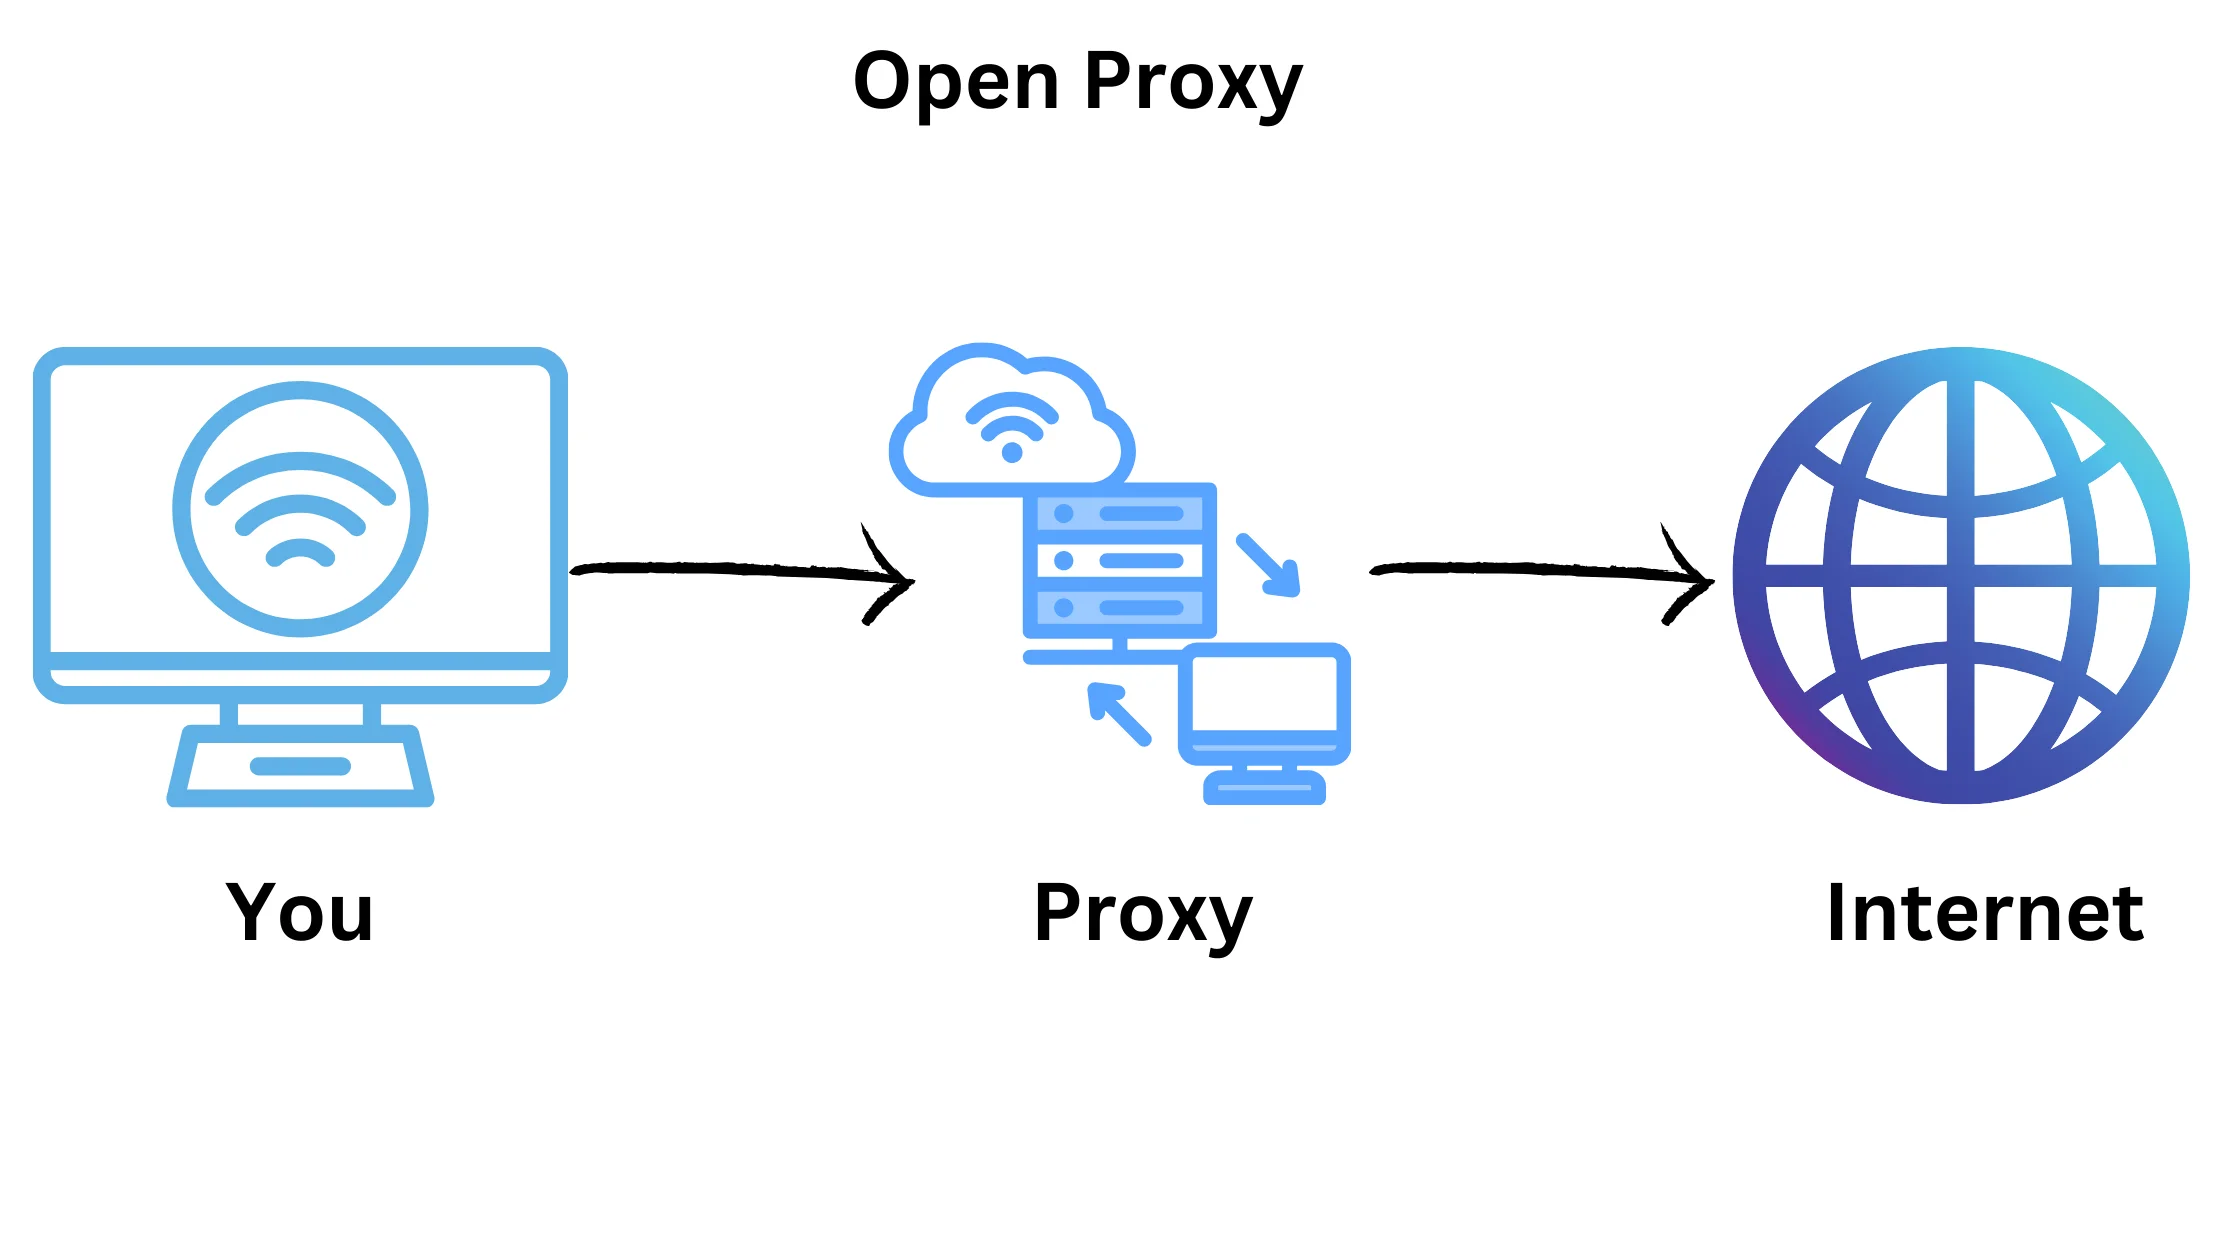 Open Proxy